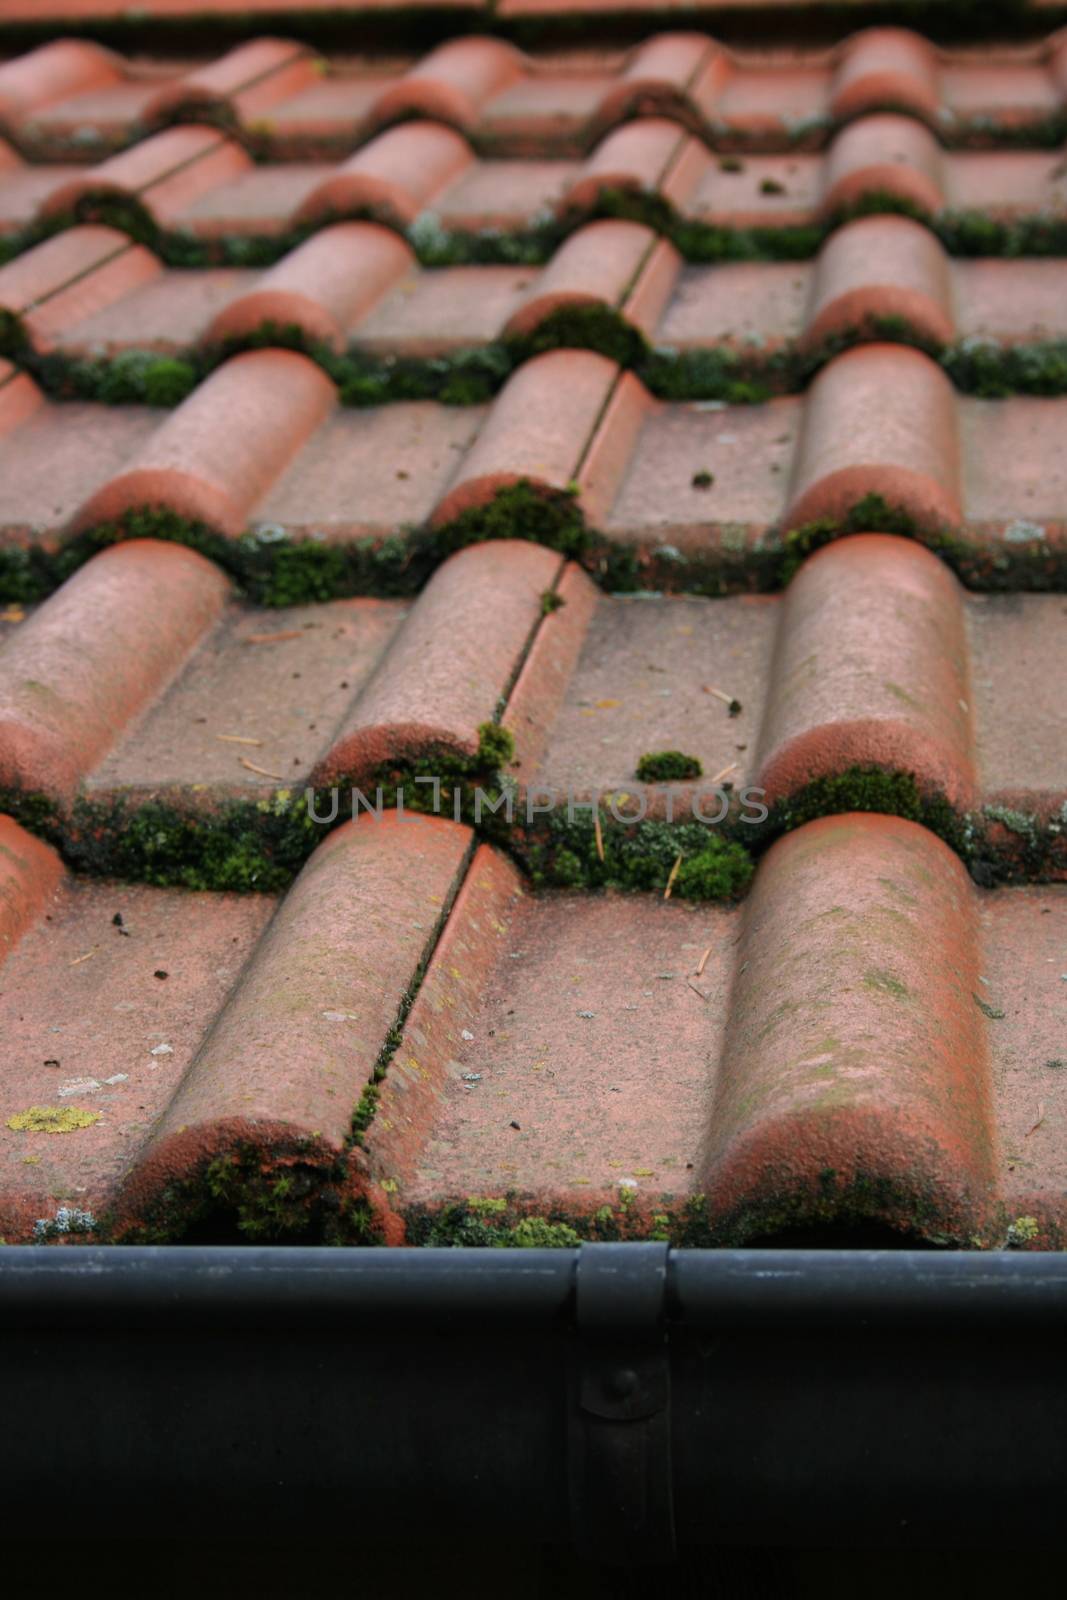 Tile roof covered with red tiles, overgrown with moss     Ziegeldach eingedeckt mit roten Dachziegel,mit Moos bewachsen by hadot